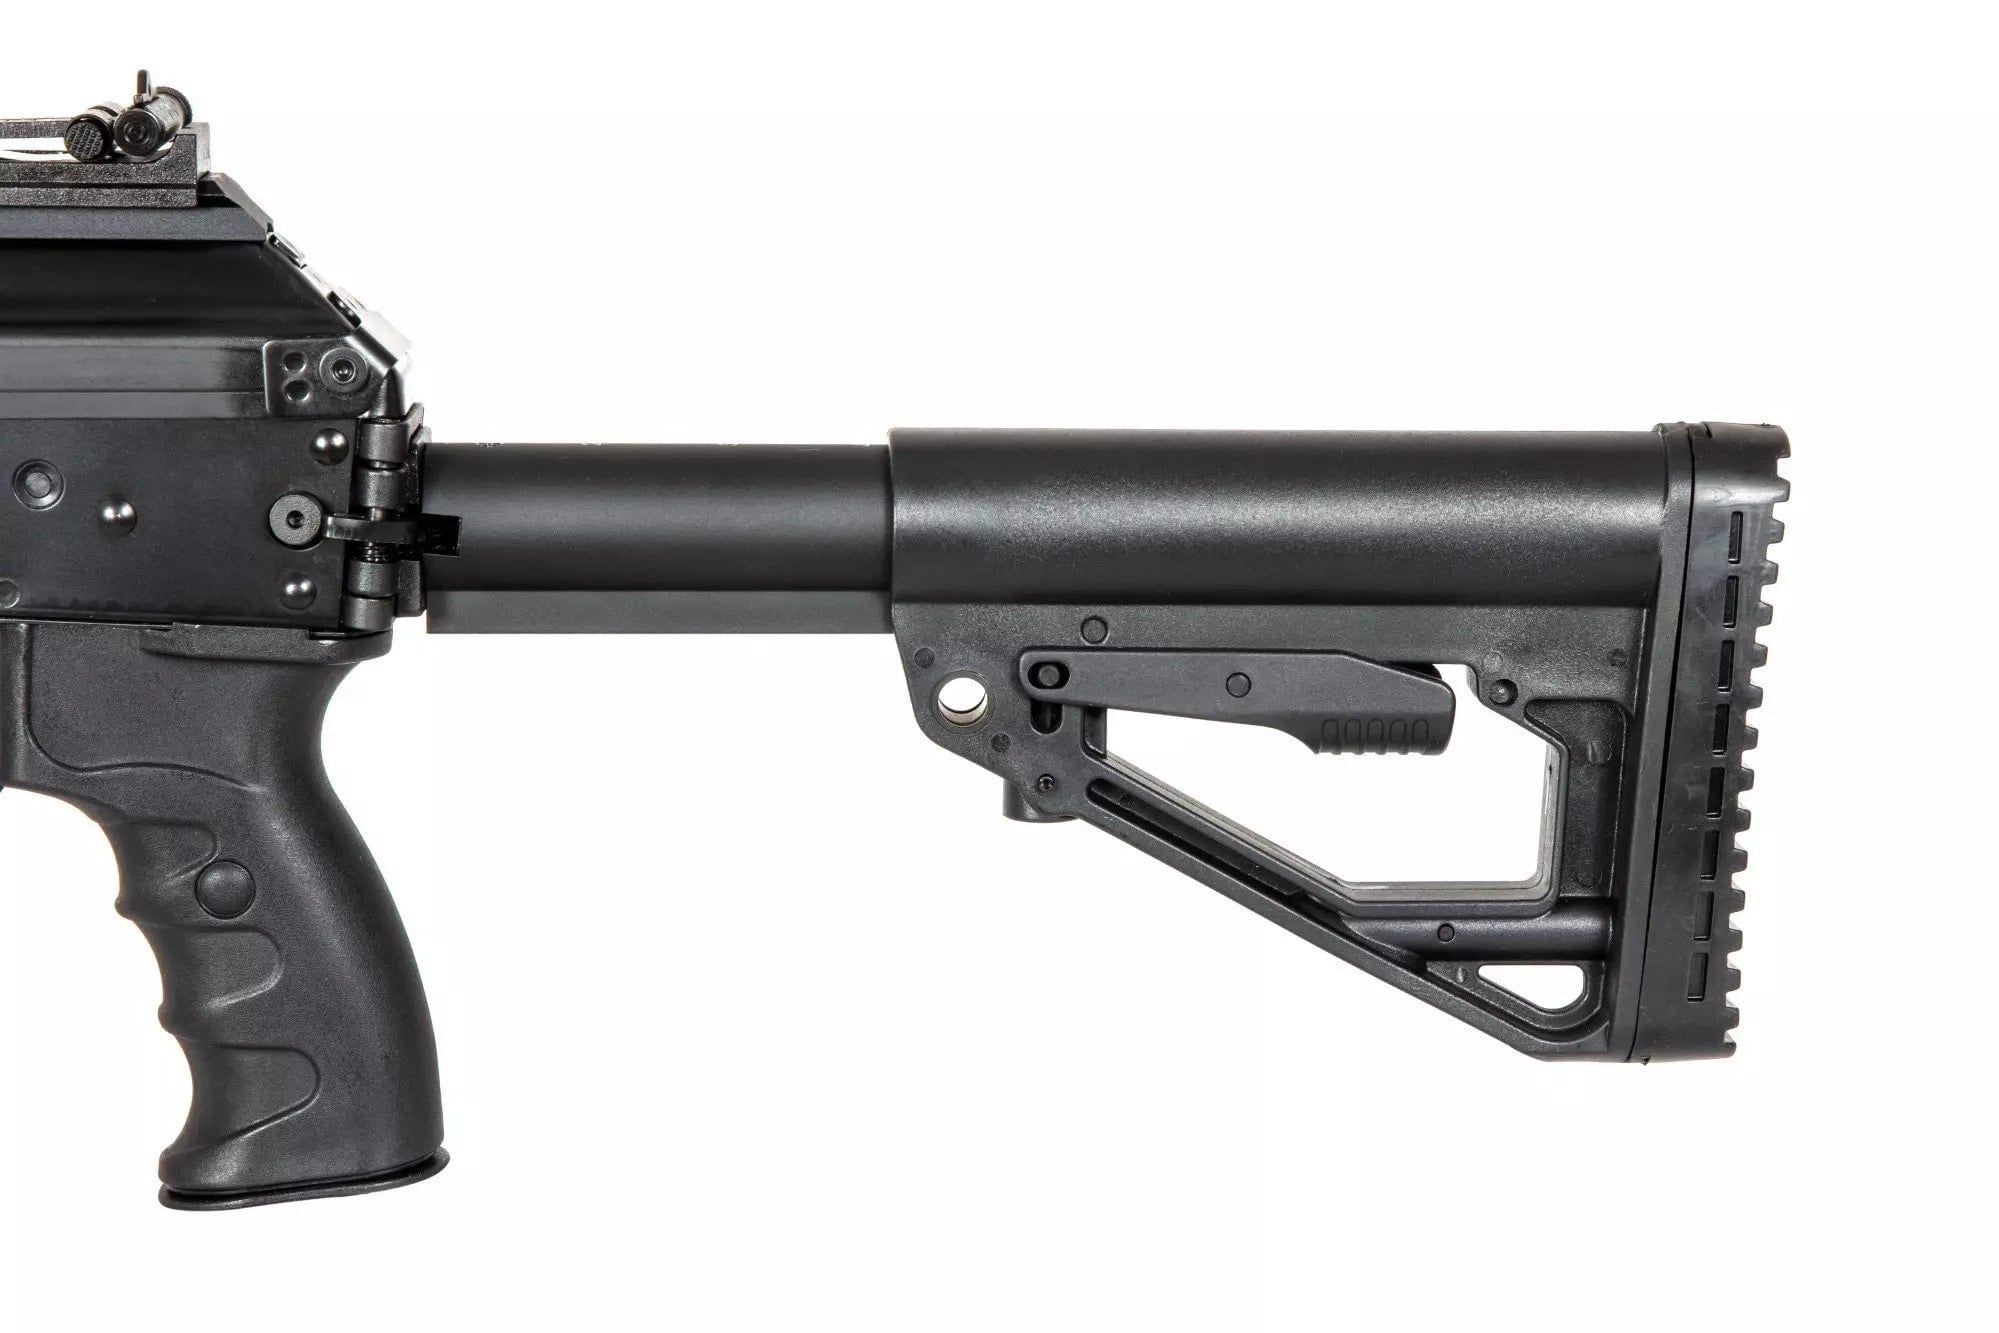 LCK-15 carbine replica